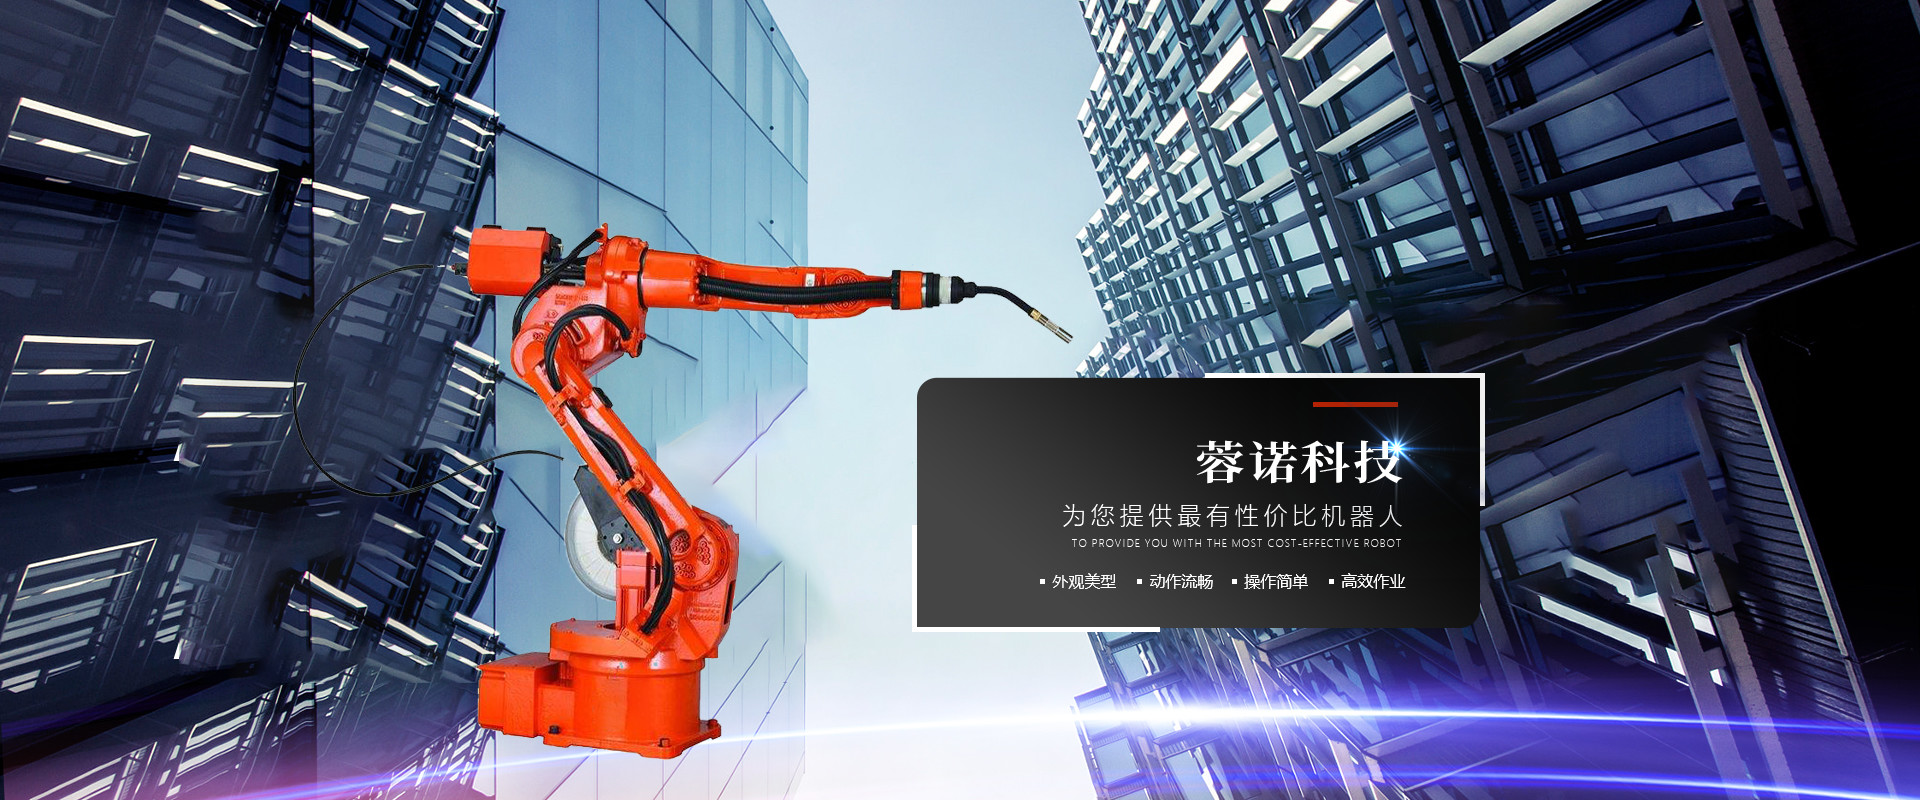 自动焊接机构_自动焊接机相关-四川蓉诺科技有限公司